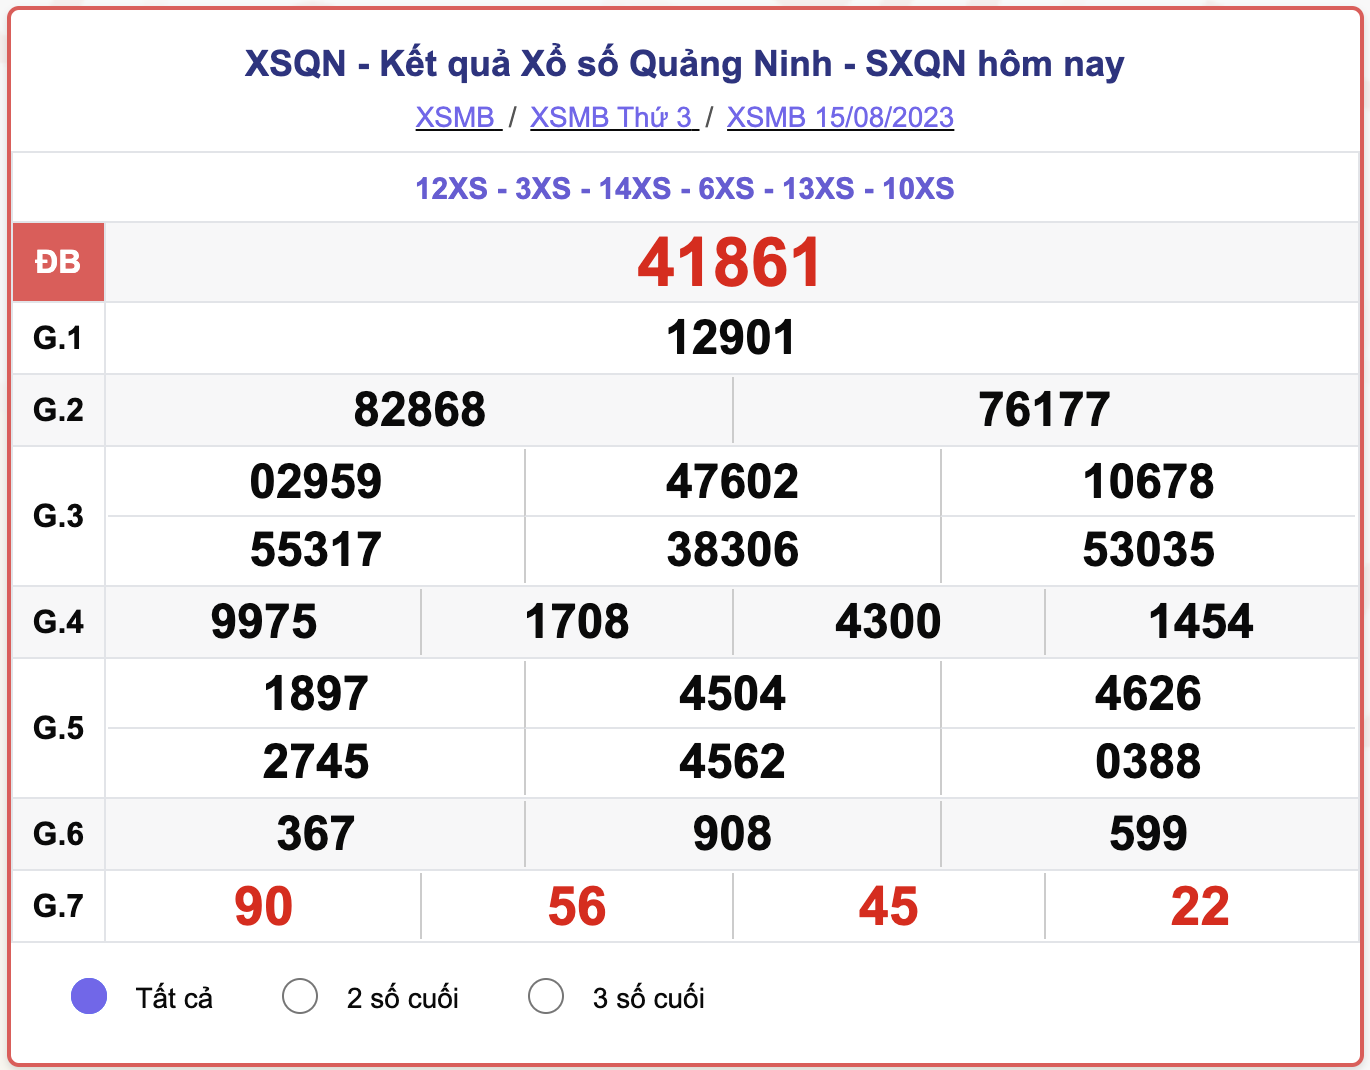 XSMB thứ 3, kết quả xổ số Quảng Ninh ngày 15/8/2023